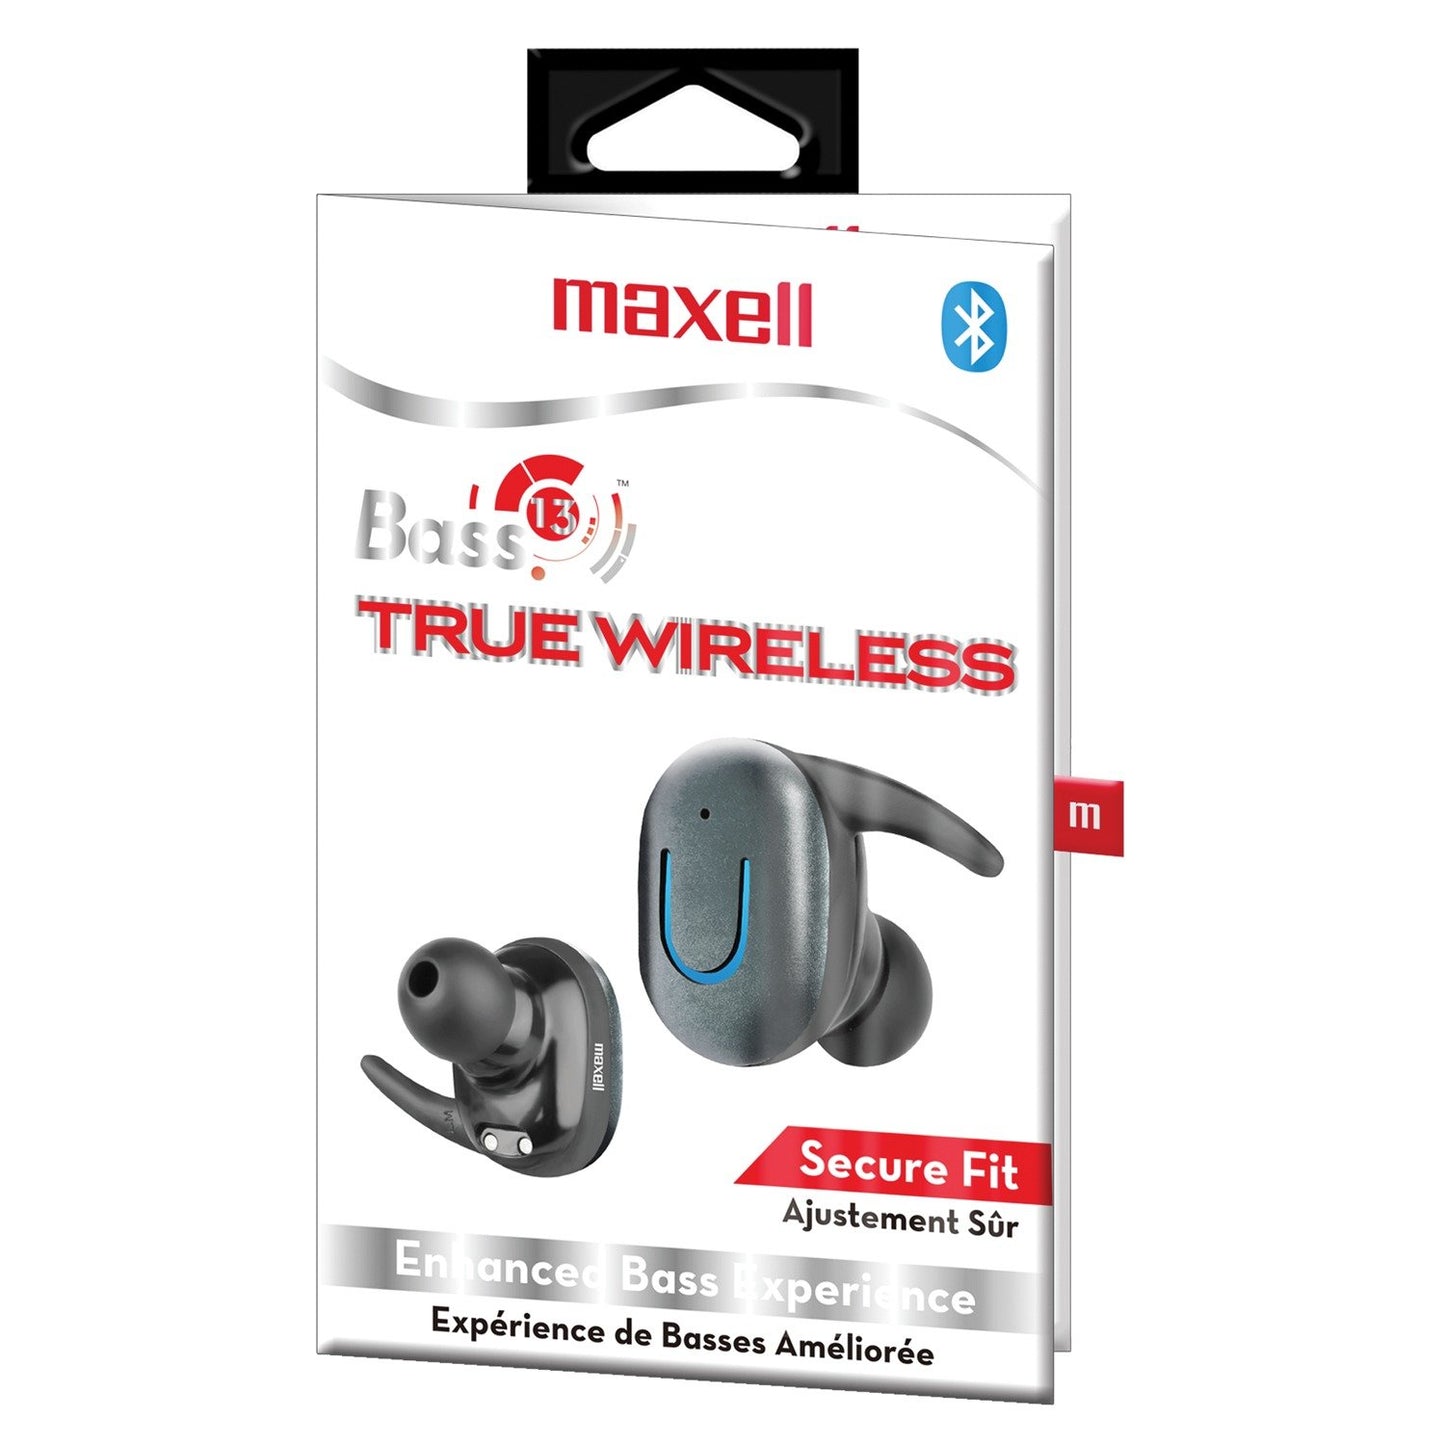 Maxell 199899 Bass 13 True Wireless Bluetooth Earbuds